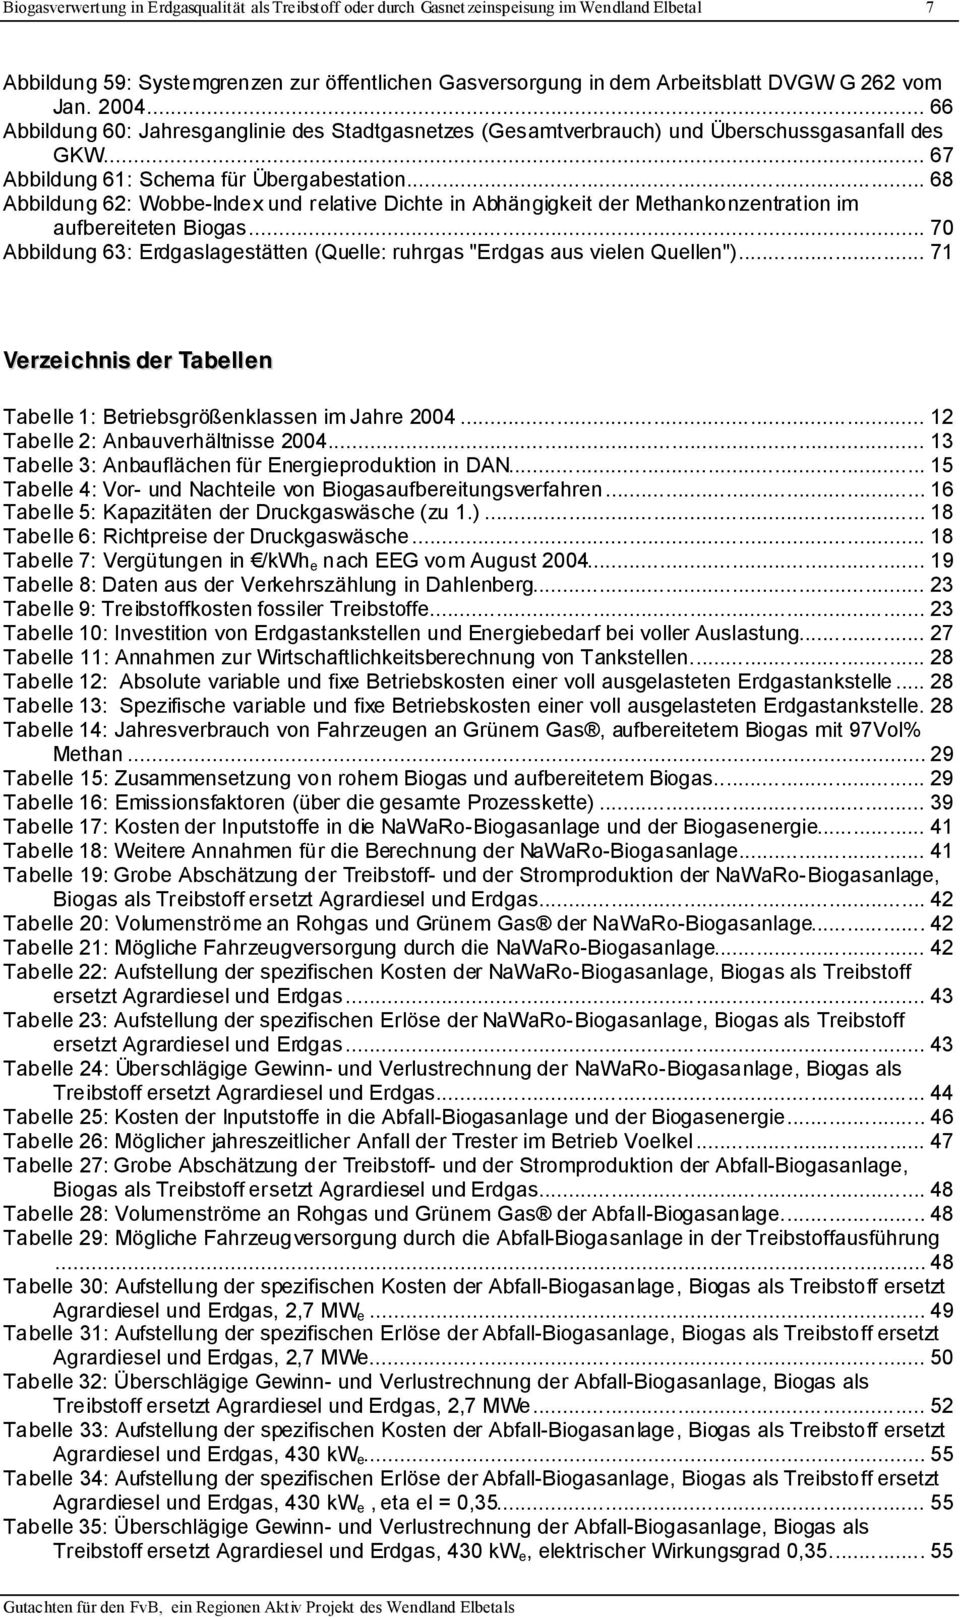 .. 68 Abbildung 62: Wobbe-Index und relative Dichte in Abhängigkeit der Methankonzentration im aufbereiteten Biogas... 7 Abbildung 63: Erdgaslagestätten (Quelle: ruhrgas "Erdgas aus vielen Quellen").